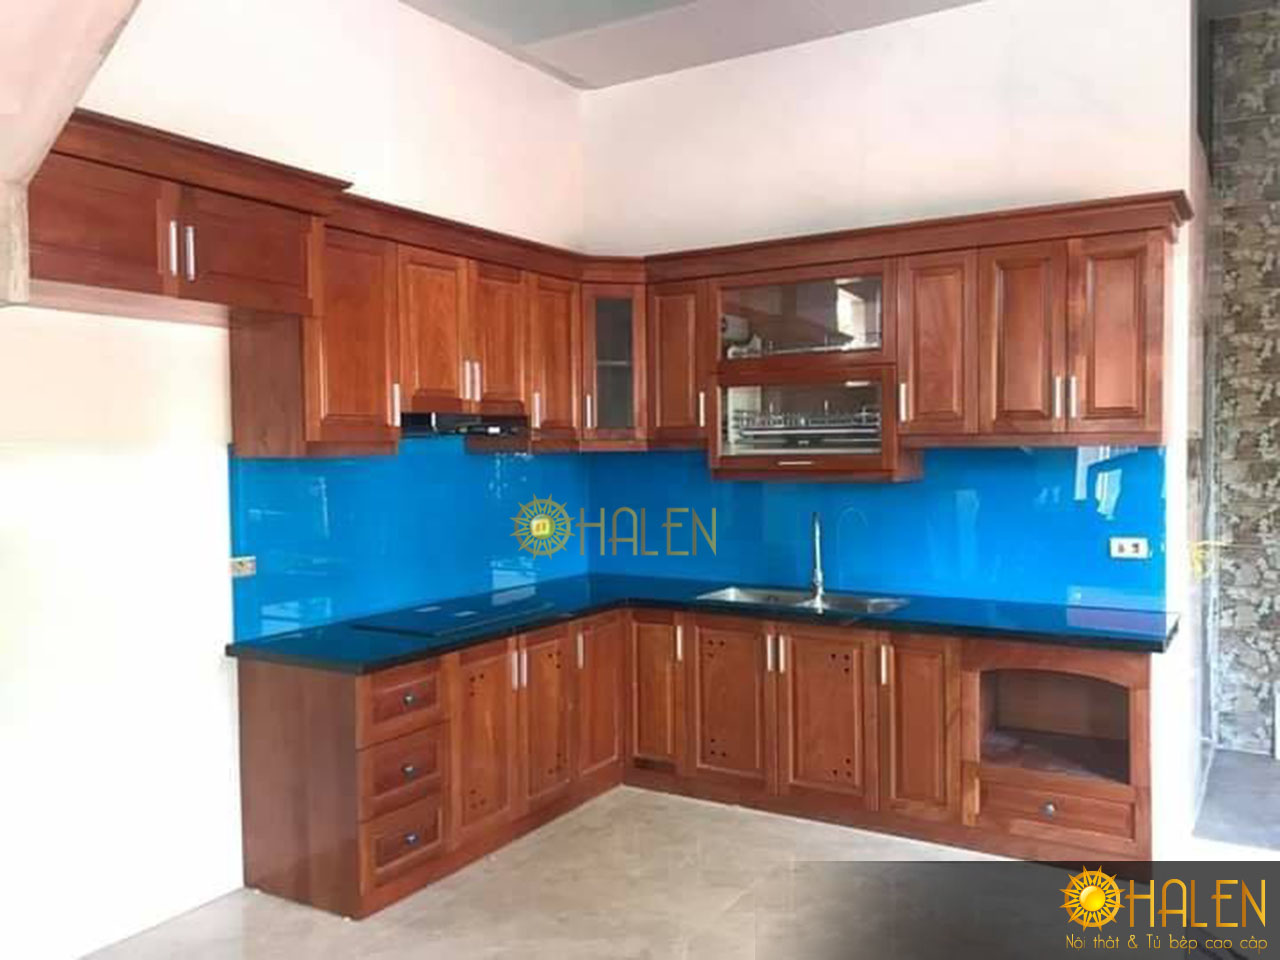 Tủ bếp kính màu xanh dương chất liệu gỗ xoan đào HAGL rất được ưa chuộng hiện nay